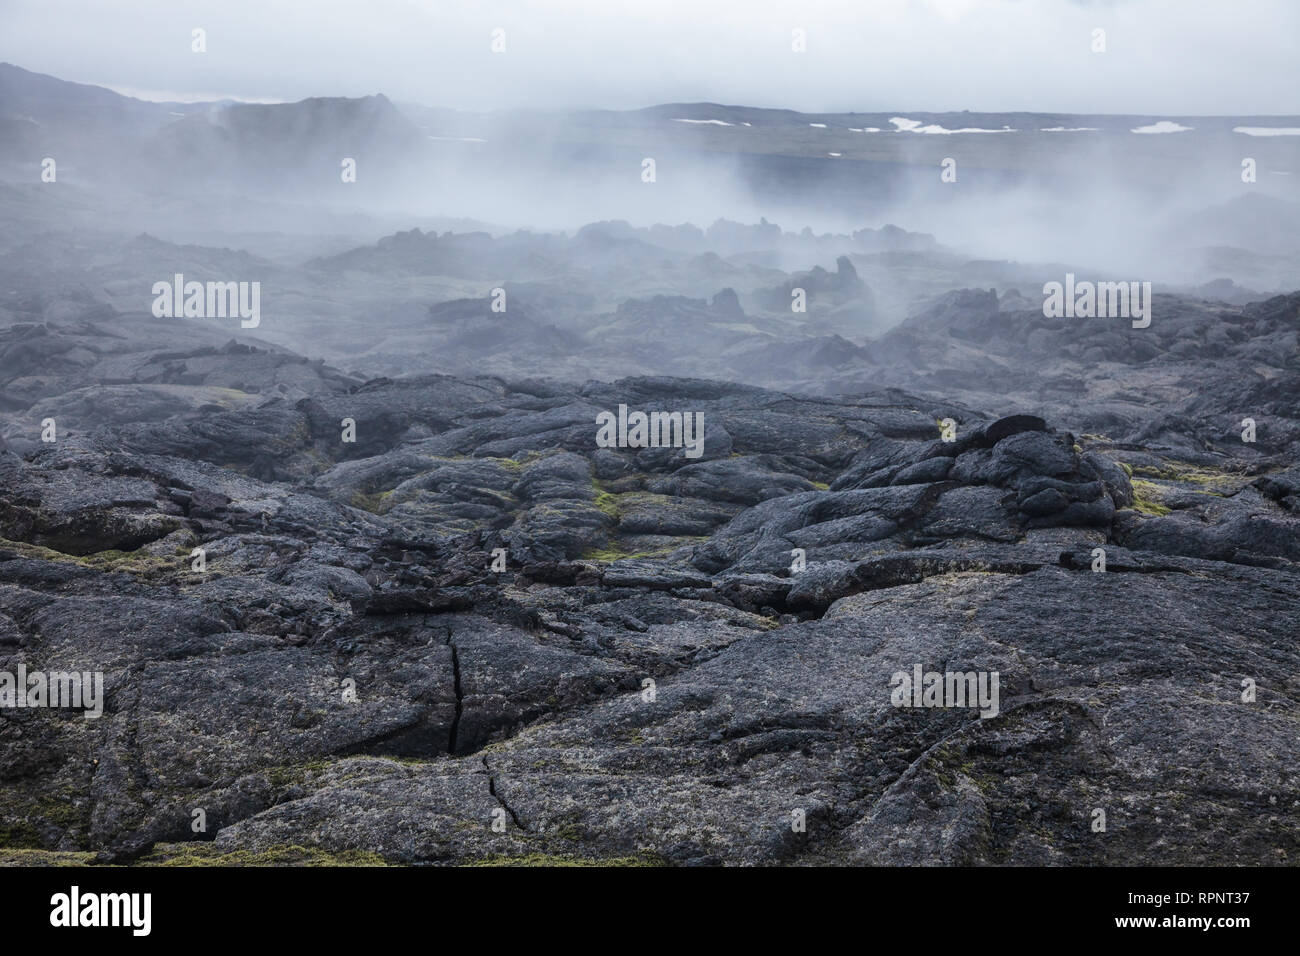 La vapeur chaude au champ de lave volcanique de Krafla dans la région de Mývatn, le nord-est de l'Islande, Scandinavie Banque D'Images